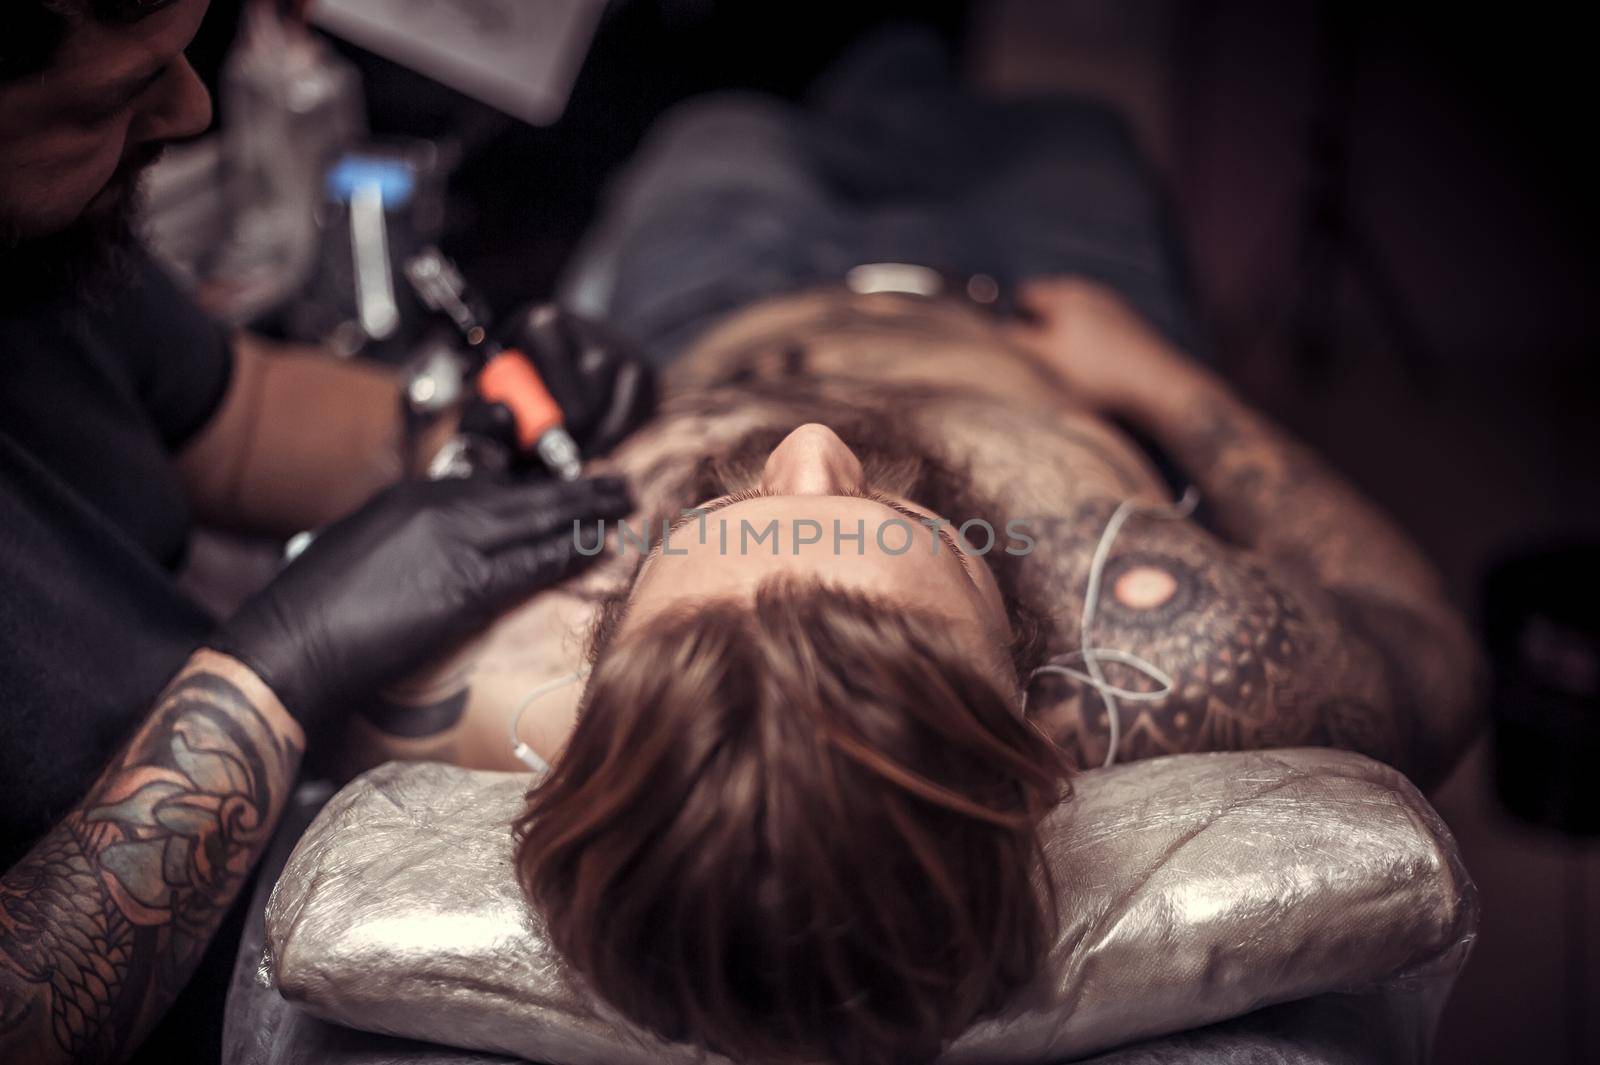 Professional tattooist shows the process of tattooing tattoo studio.